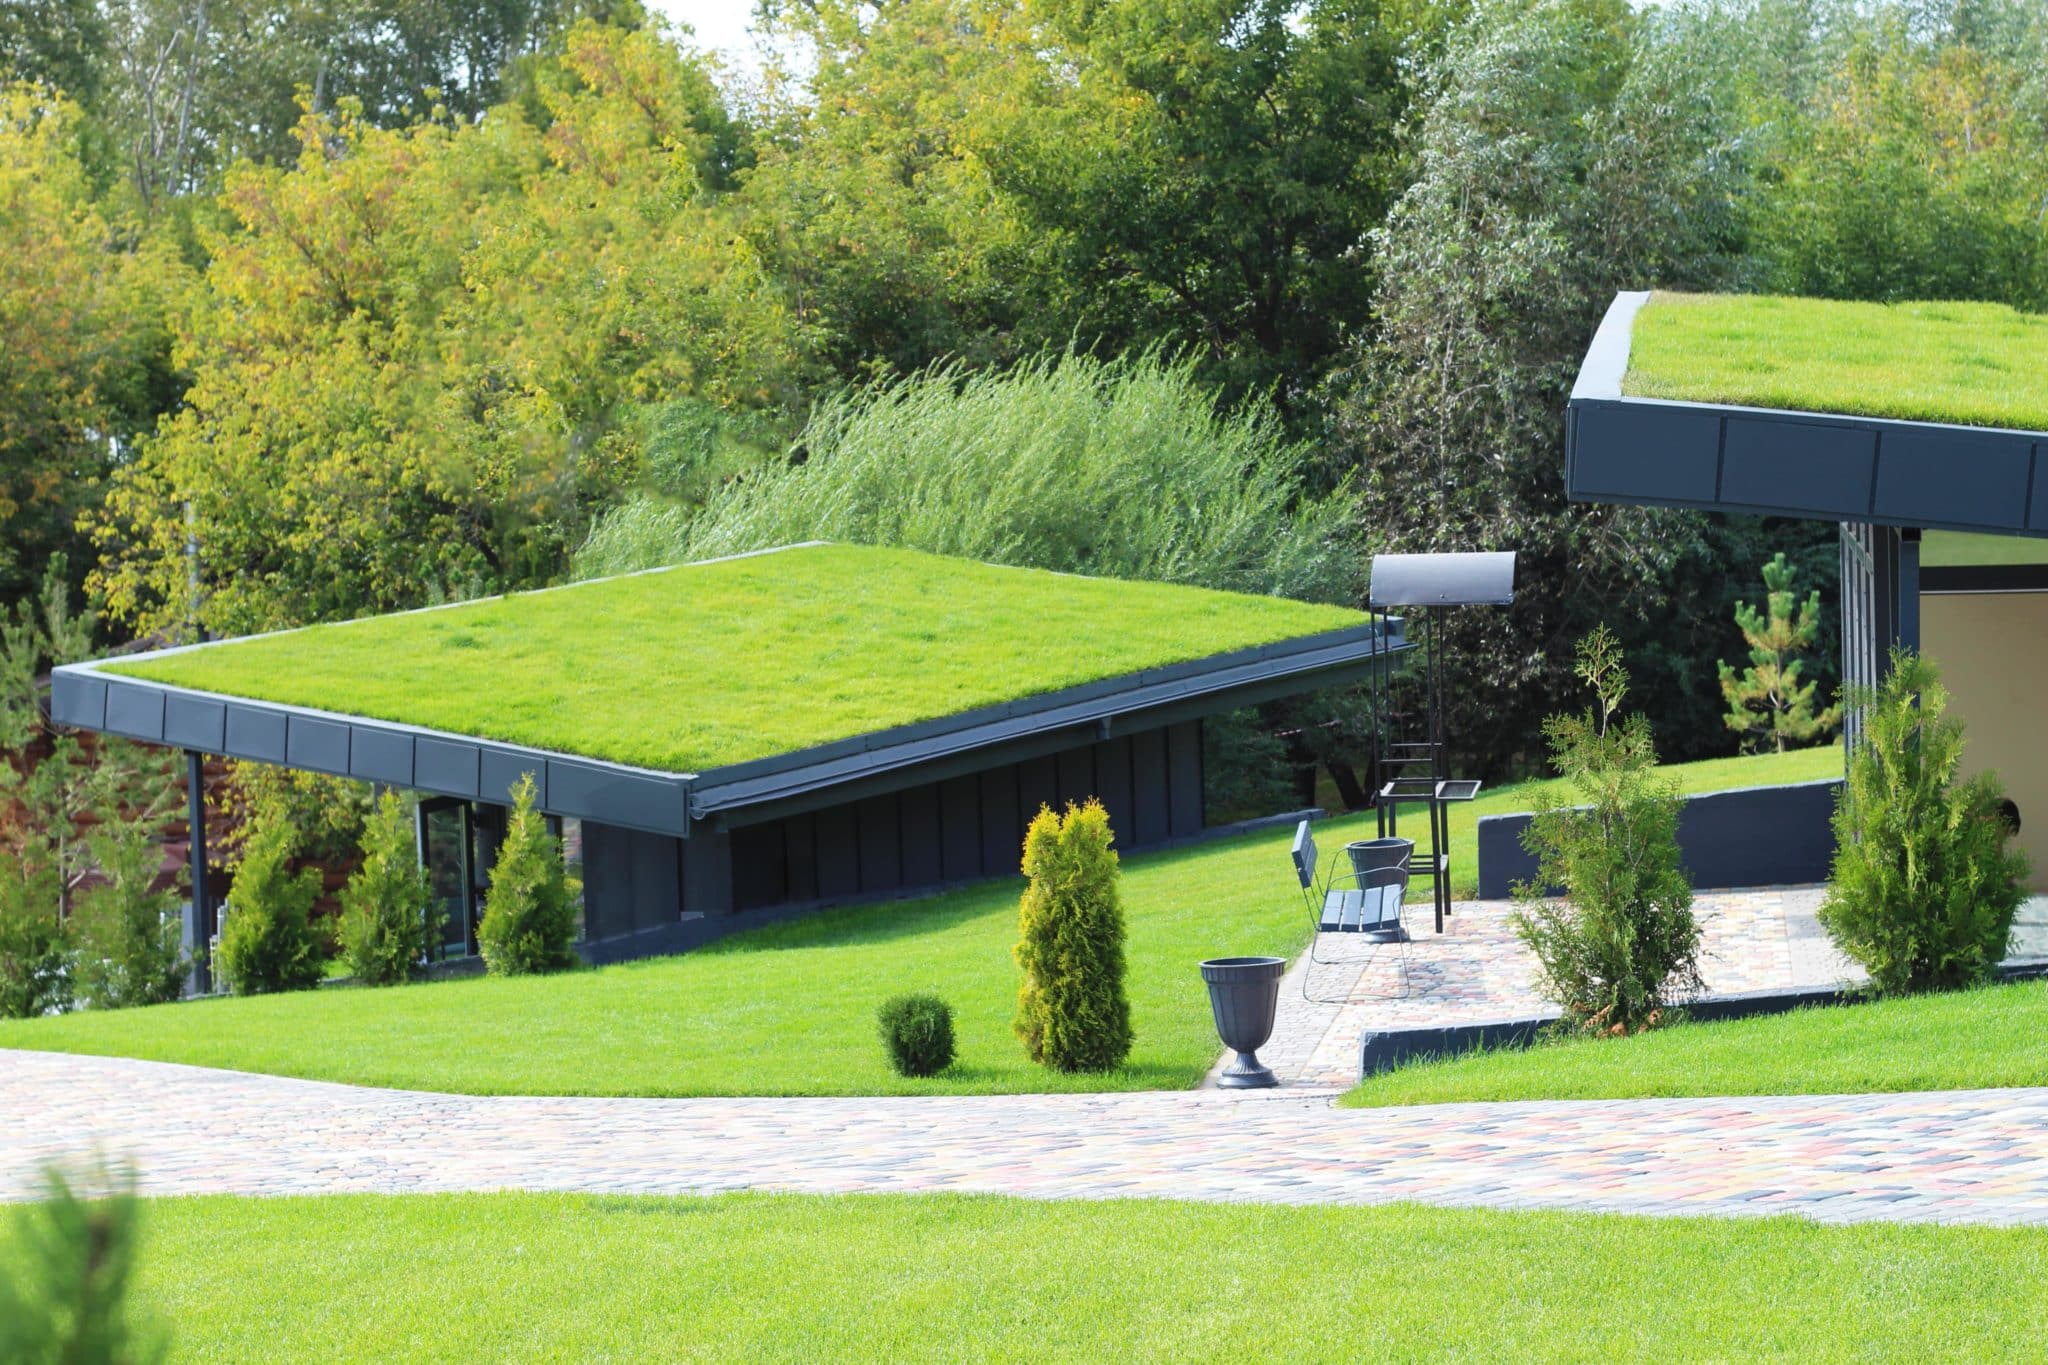 Beispiel einer extensiven Dachbegrünung auf zwei Hausdächern im Grünen